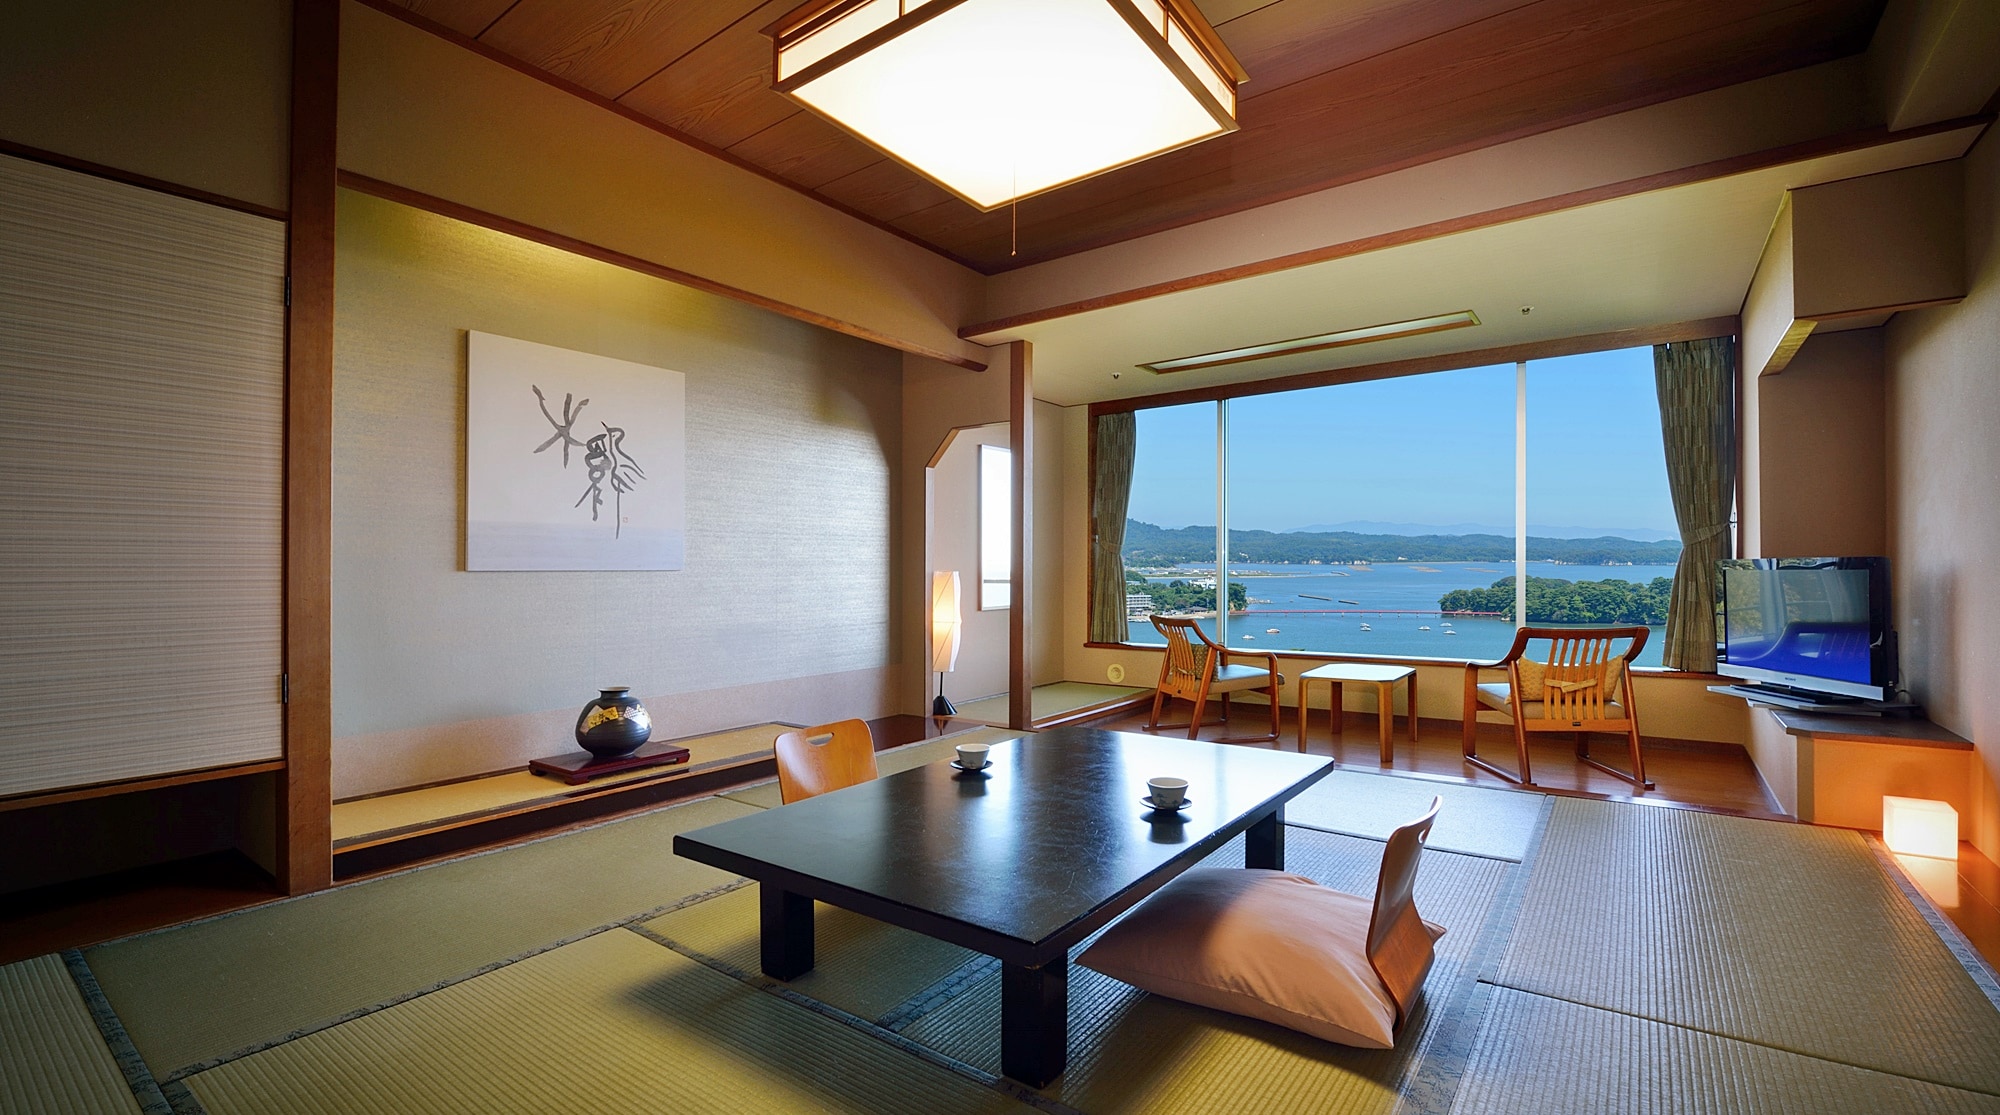 【바다쪽/일본식 방】송풍각 - 흡연 가능한 일본식 방. 전실 바다쪽을 향해 대욕장에 가장 가까운 동입니다.